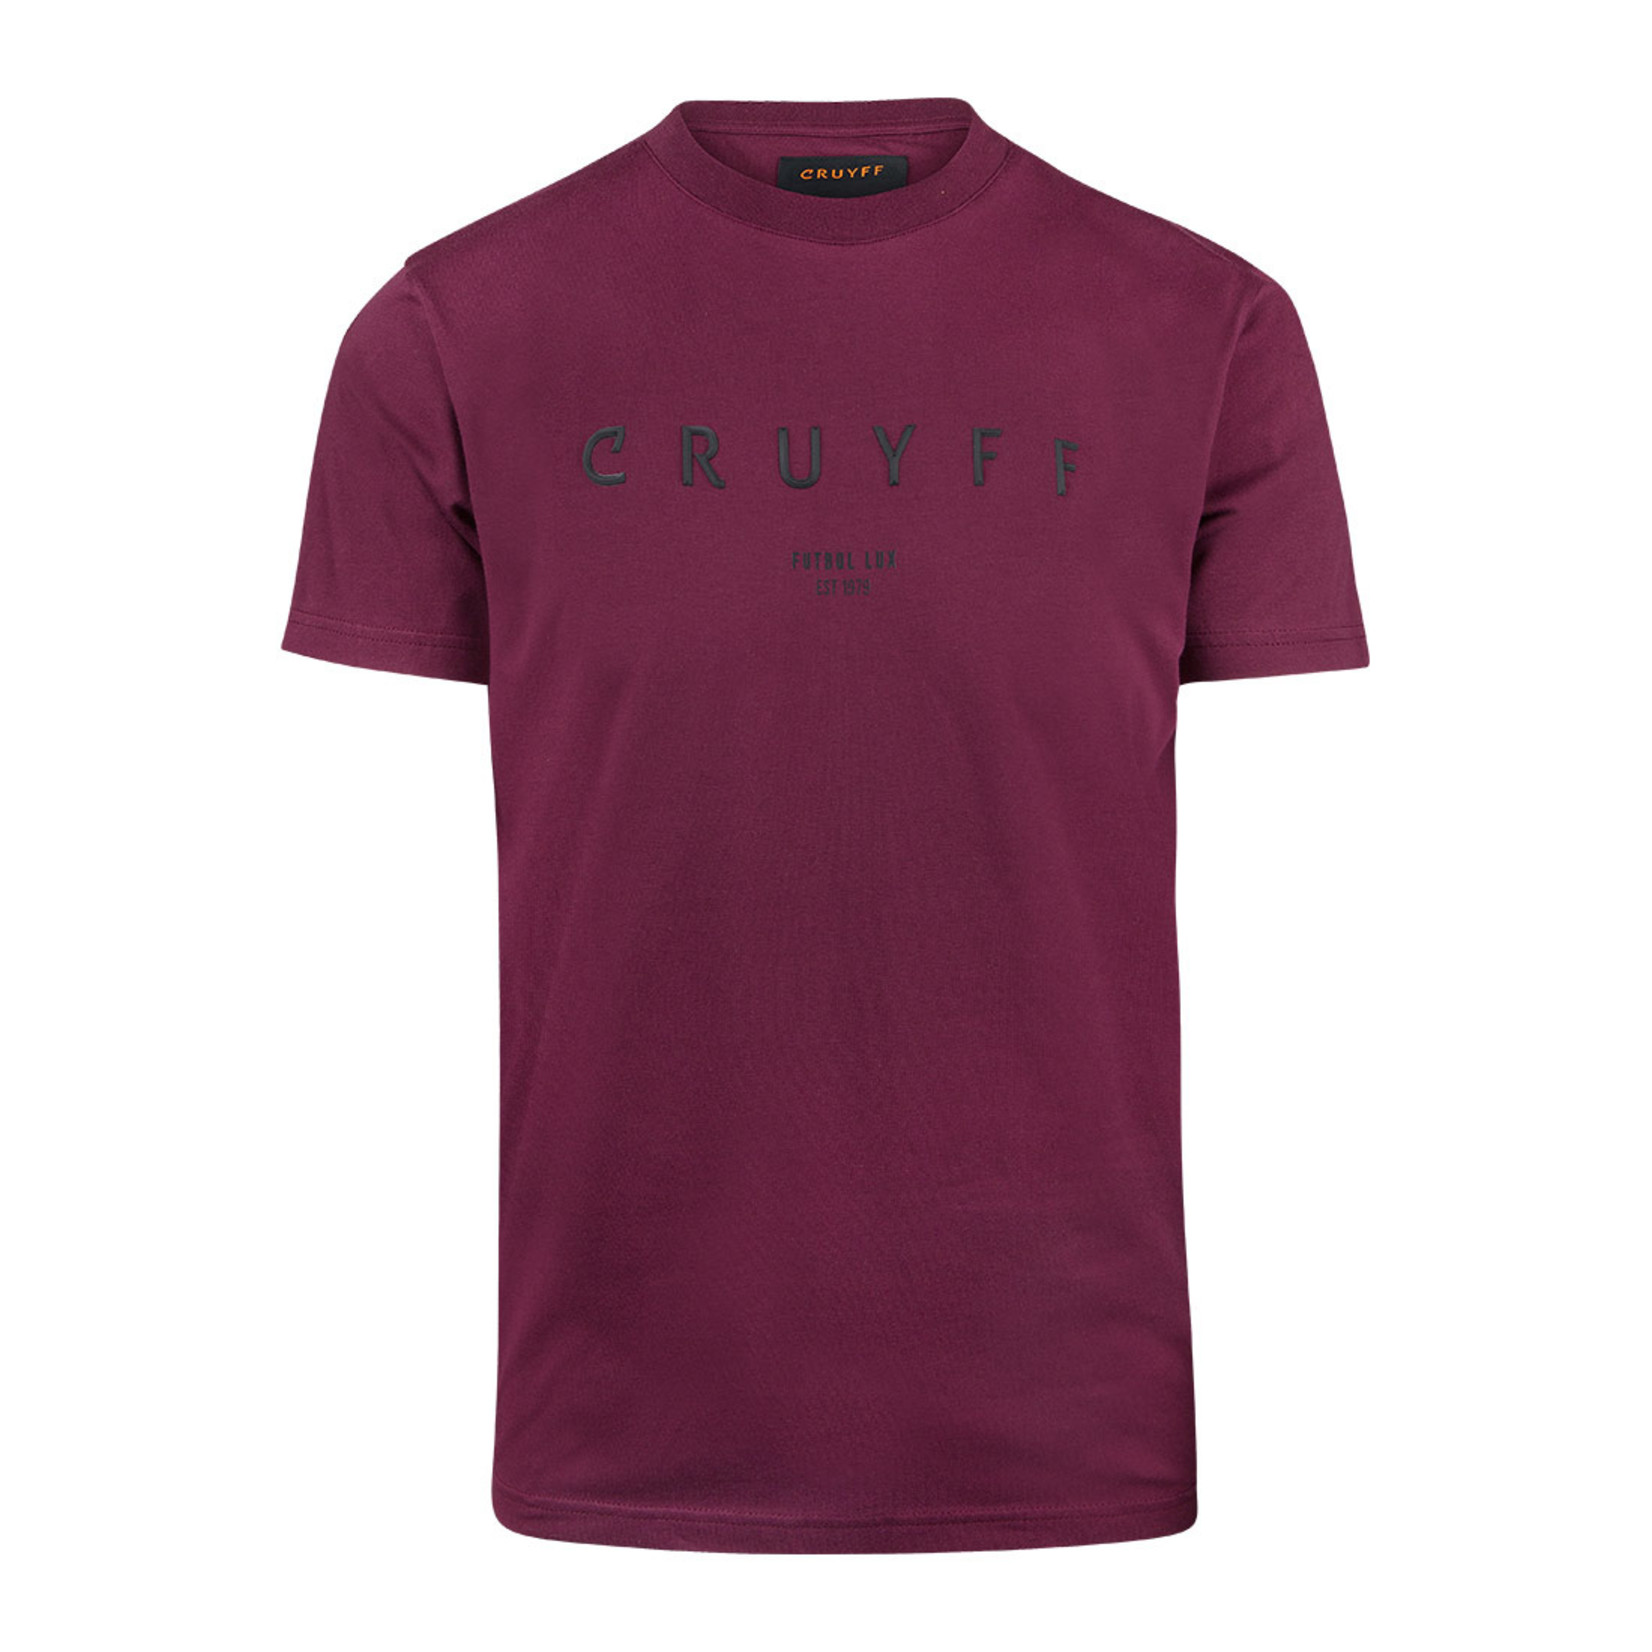 Cruyff Cruyff Lux Shirt Burgundy